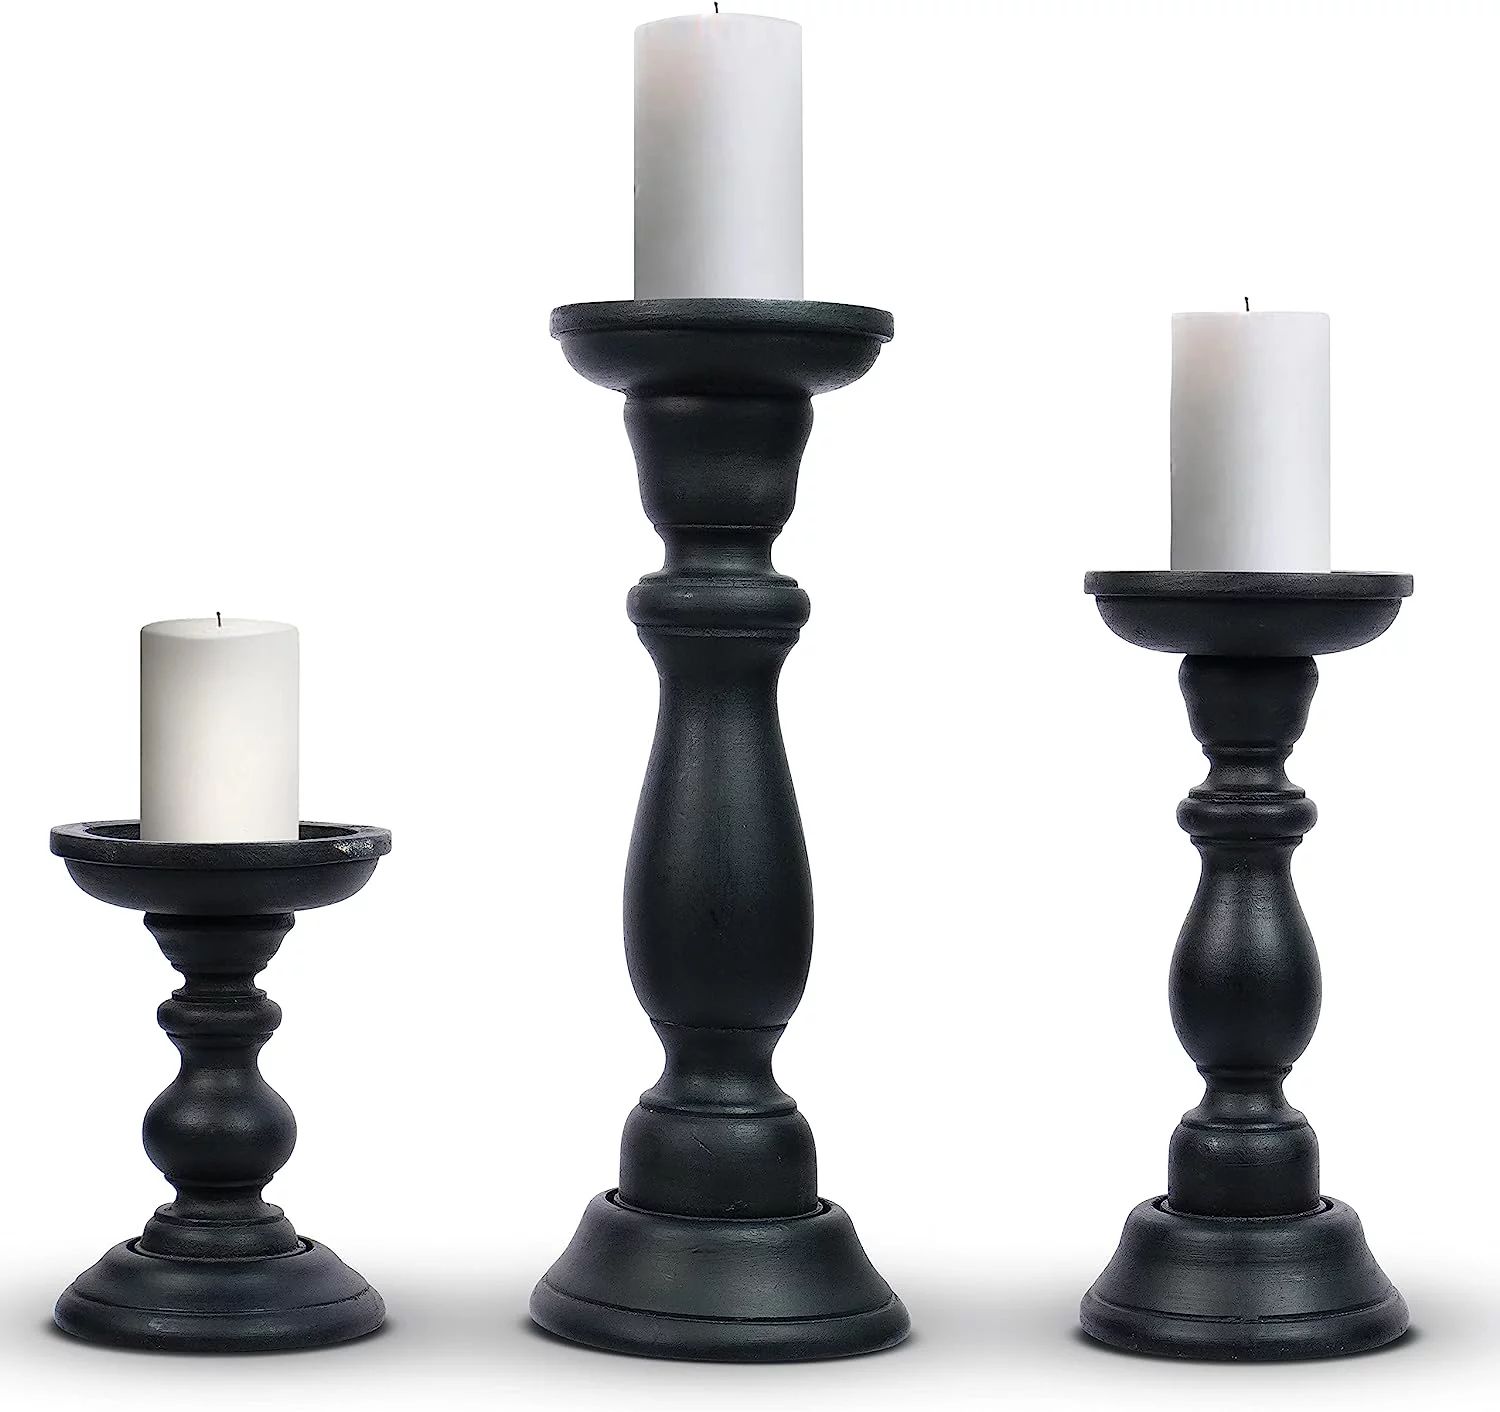 Mela Artisans Matte Black Tuli Wood Pillar Candle Holders - Set of 3 | Walmart (US)